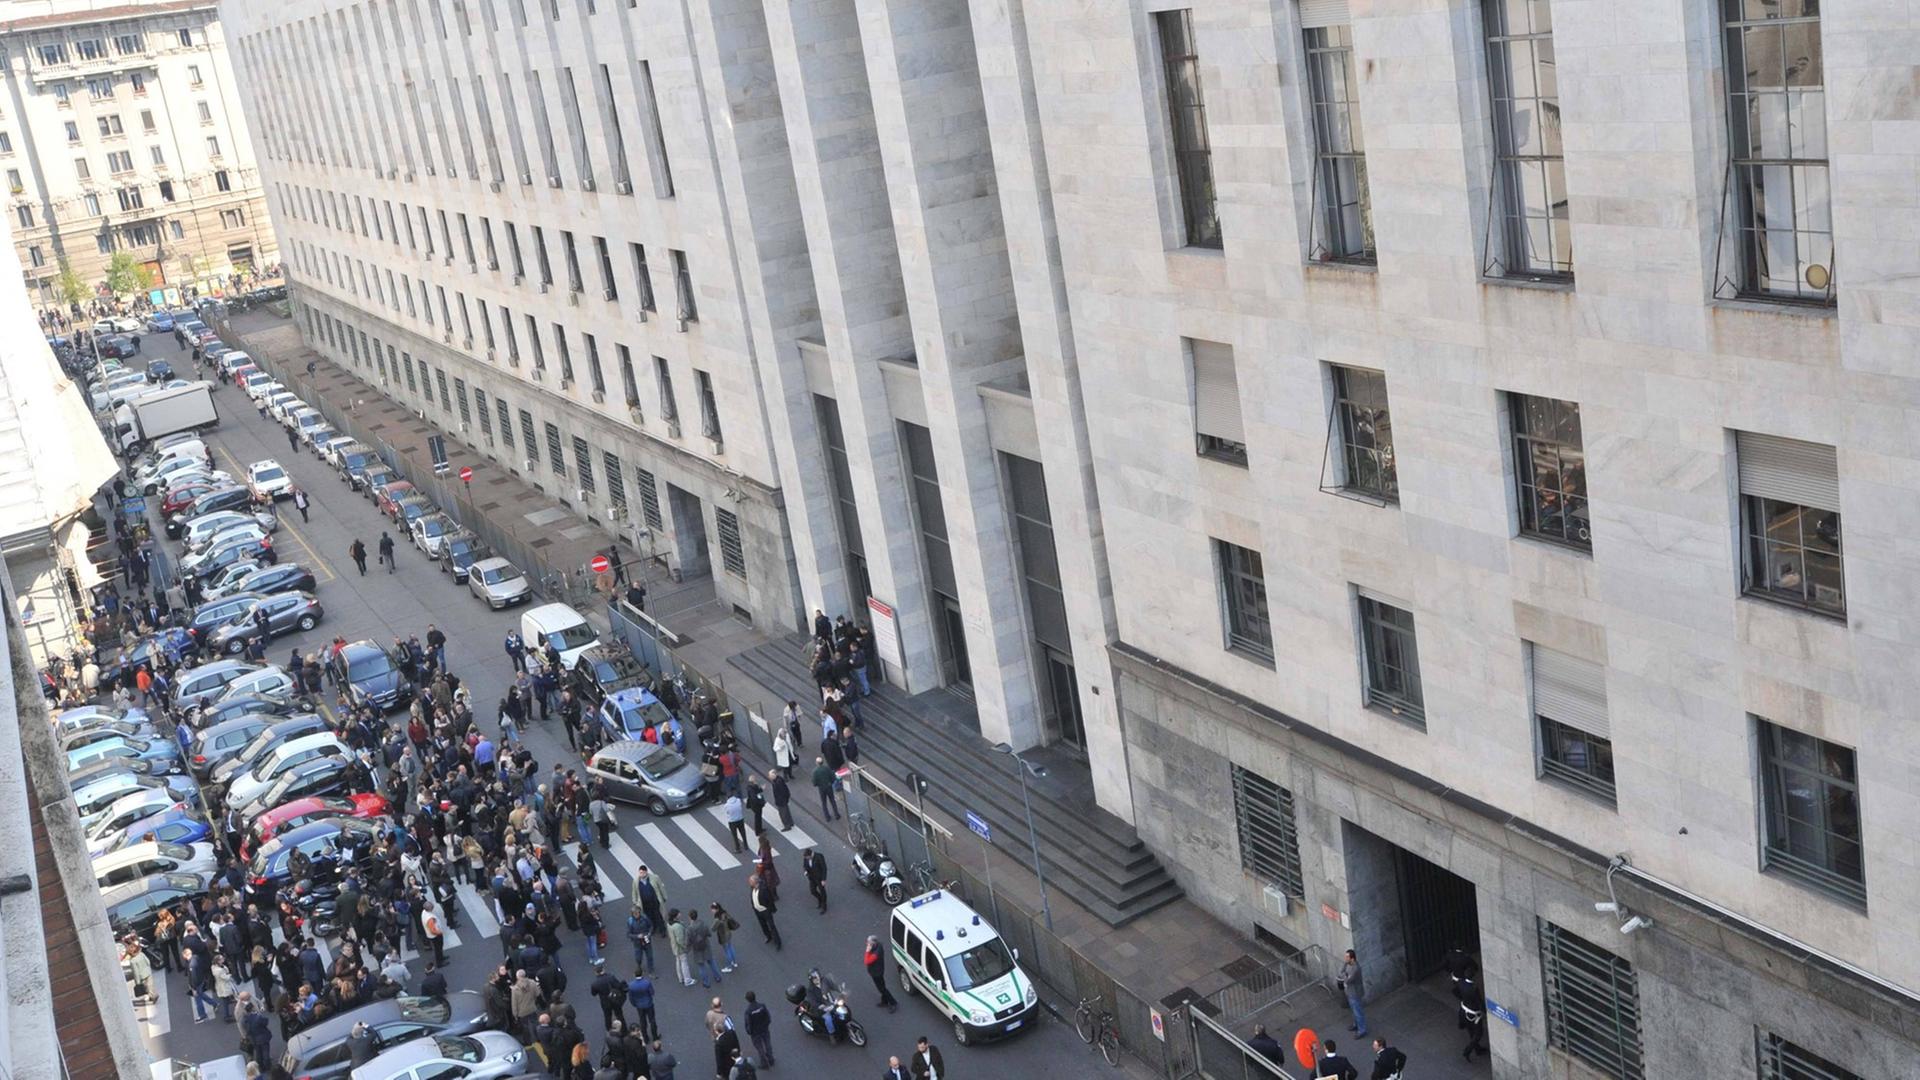 Der Mailänder Justizpalast von halb oben fotografiert, davor eine Menschenmenge und Polizeifahrzeuge.